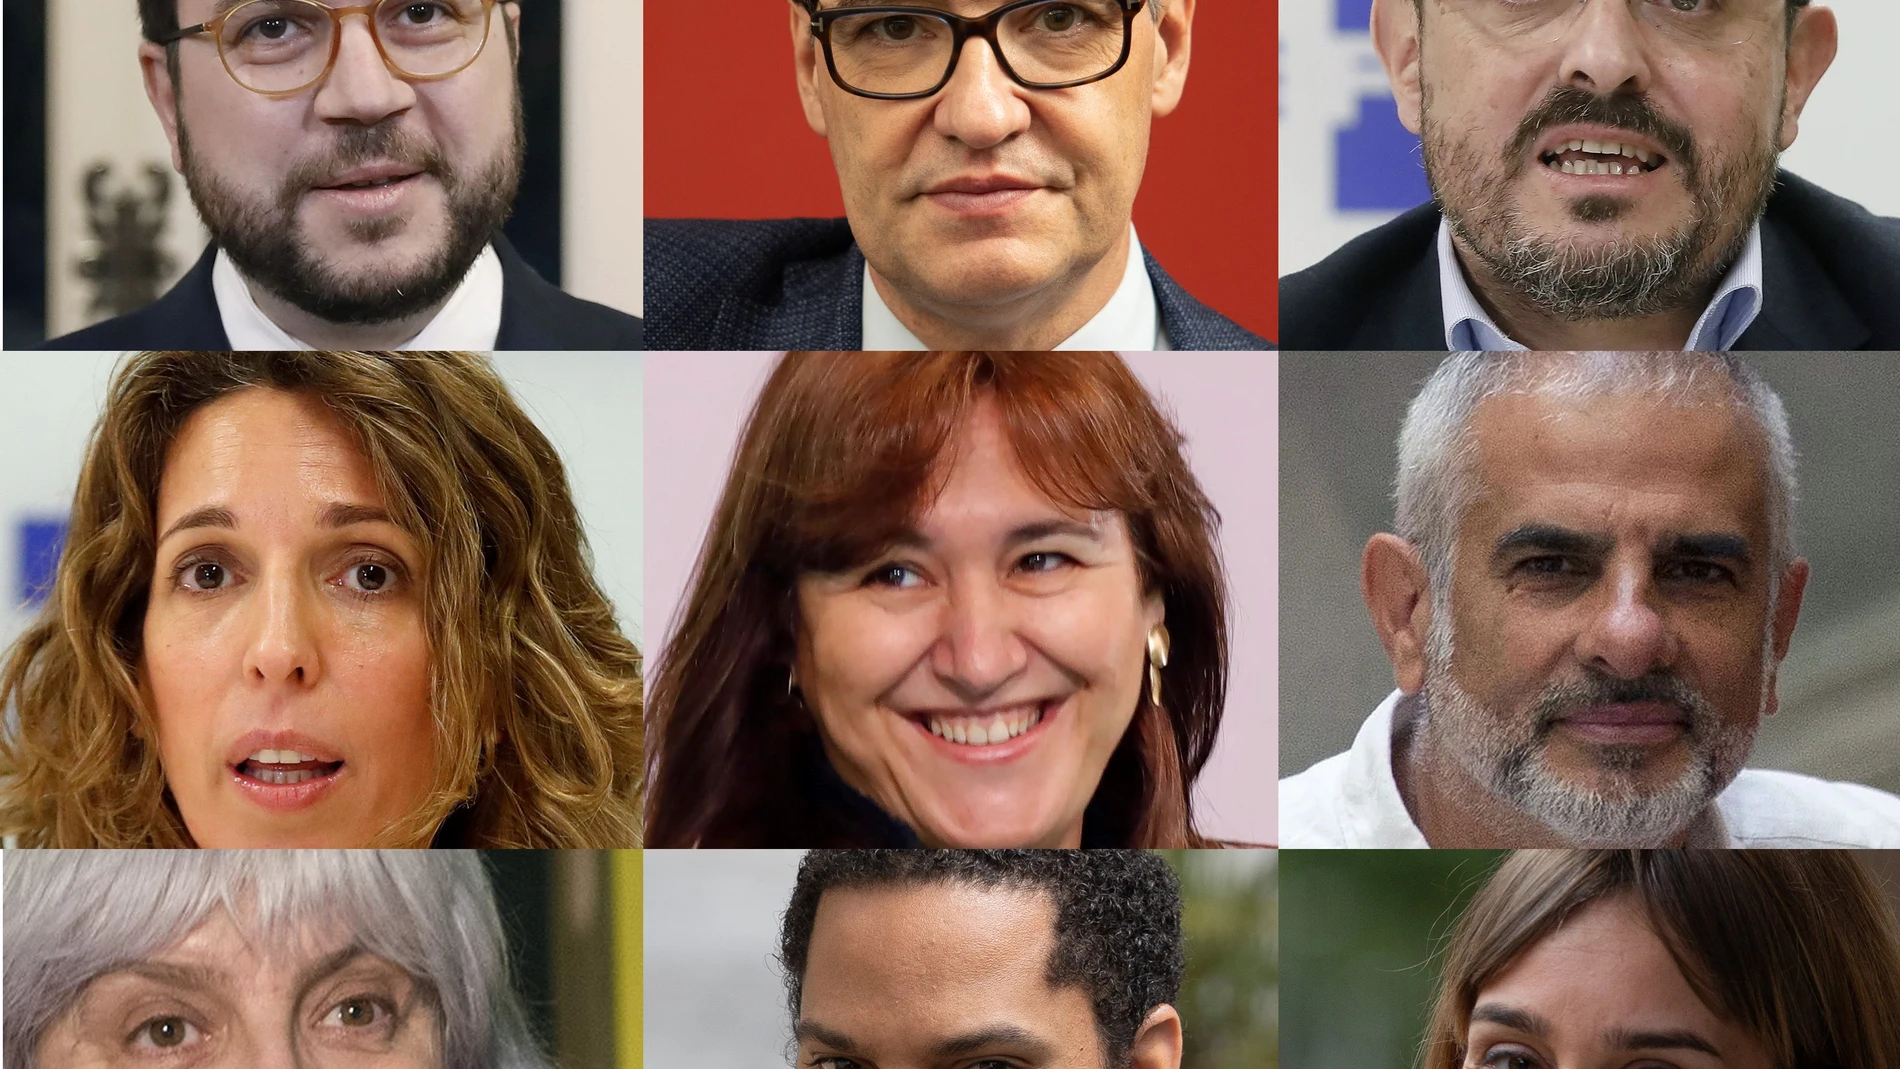 Candidatos Elecciones Cataluña